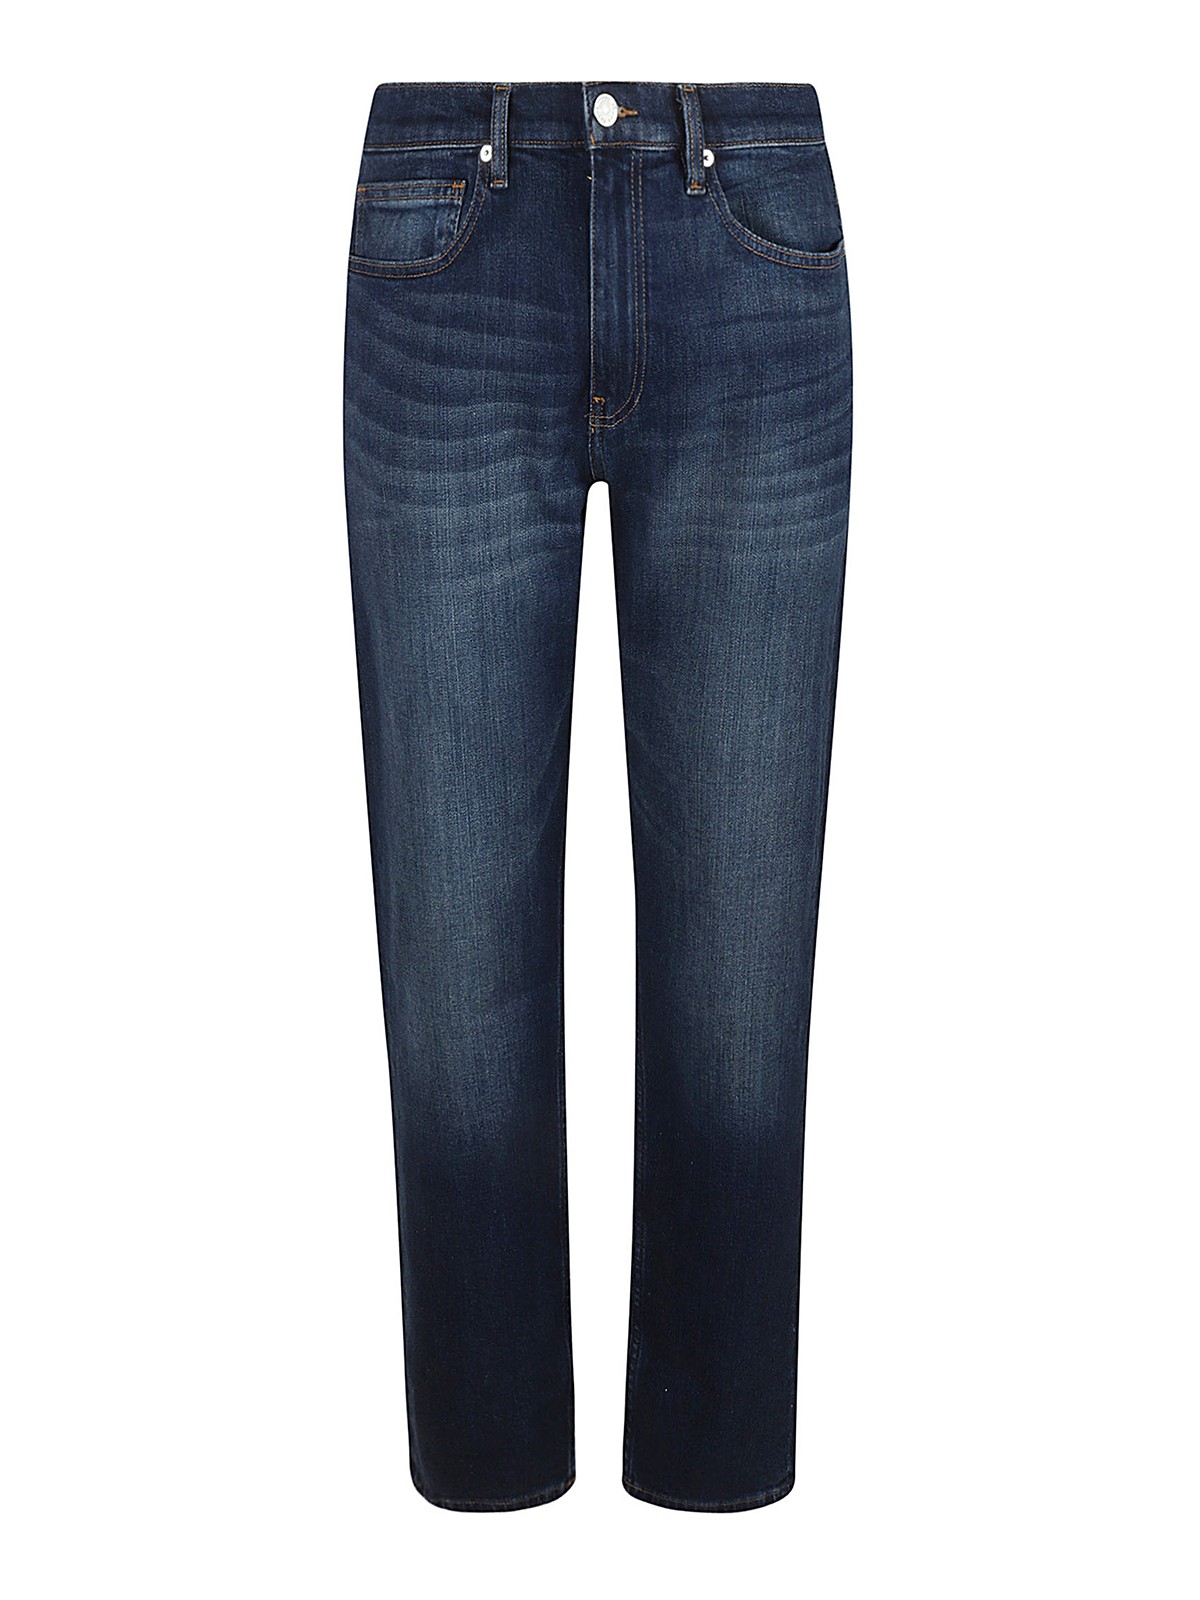 Straight leg jeans Frame - Straight leg jeans - LMHST469BURS